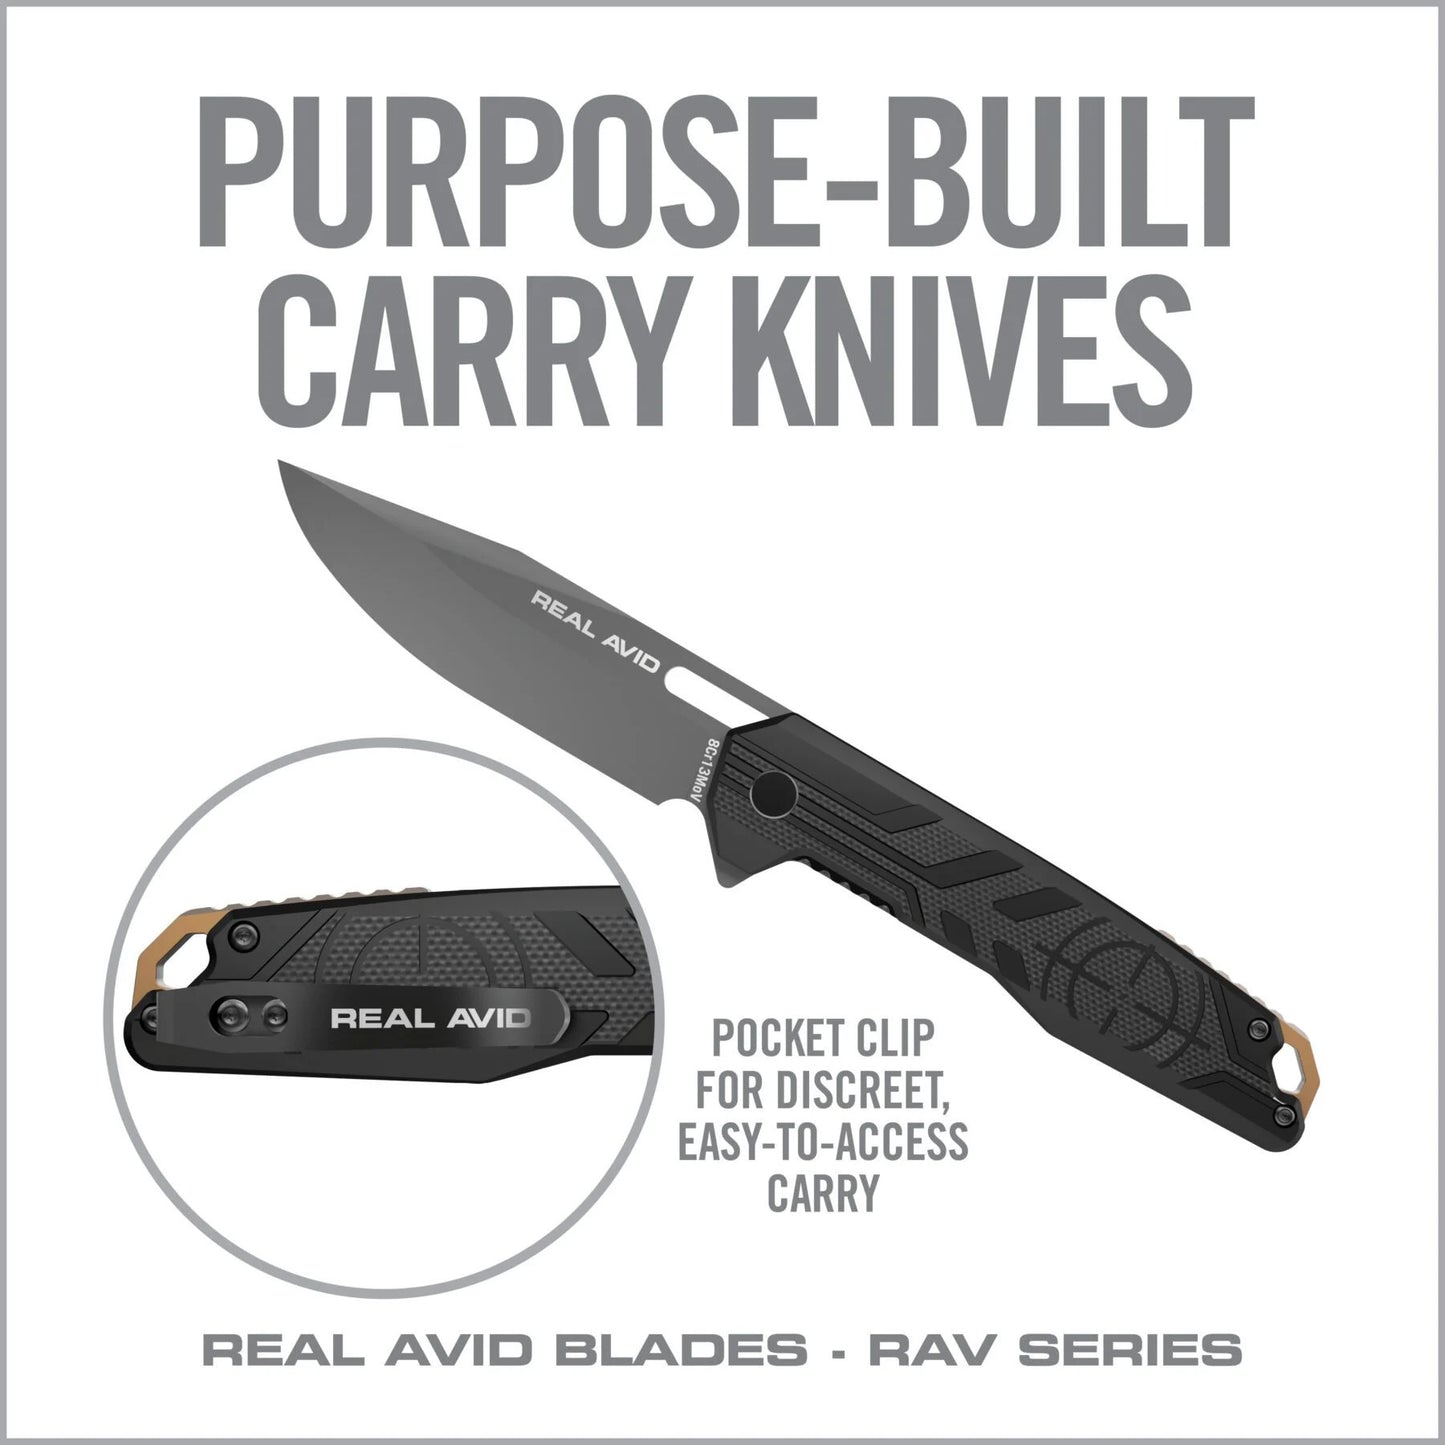 Couteau pliant EDC RAV-7 - REAL AVID-T.A DEFENSE